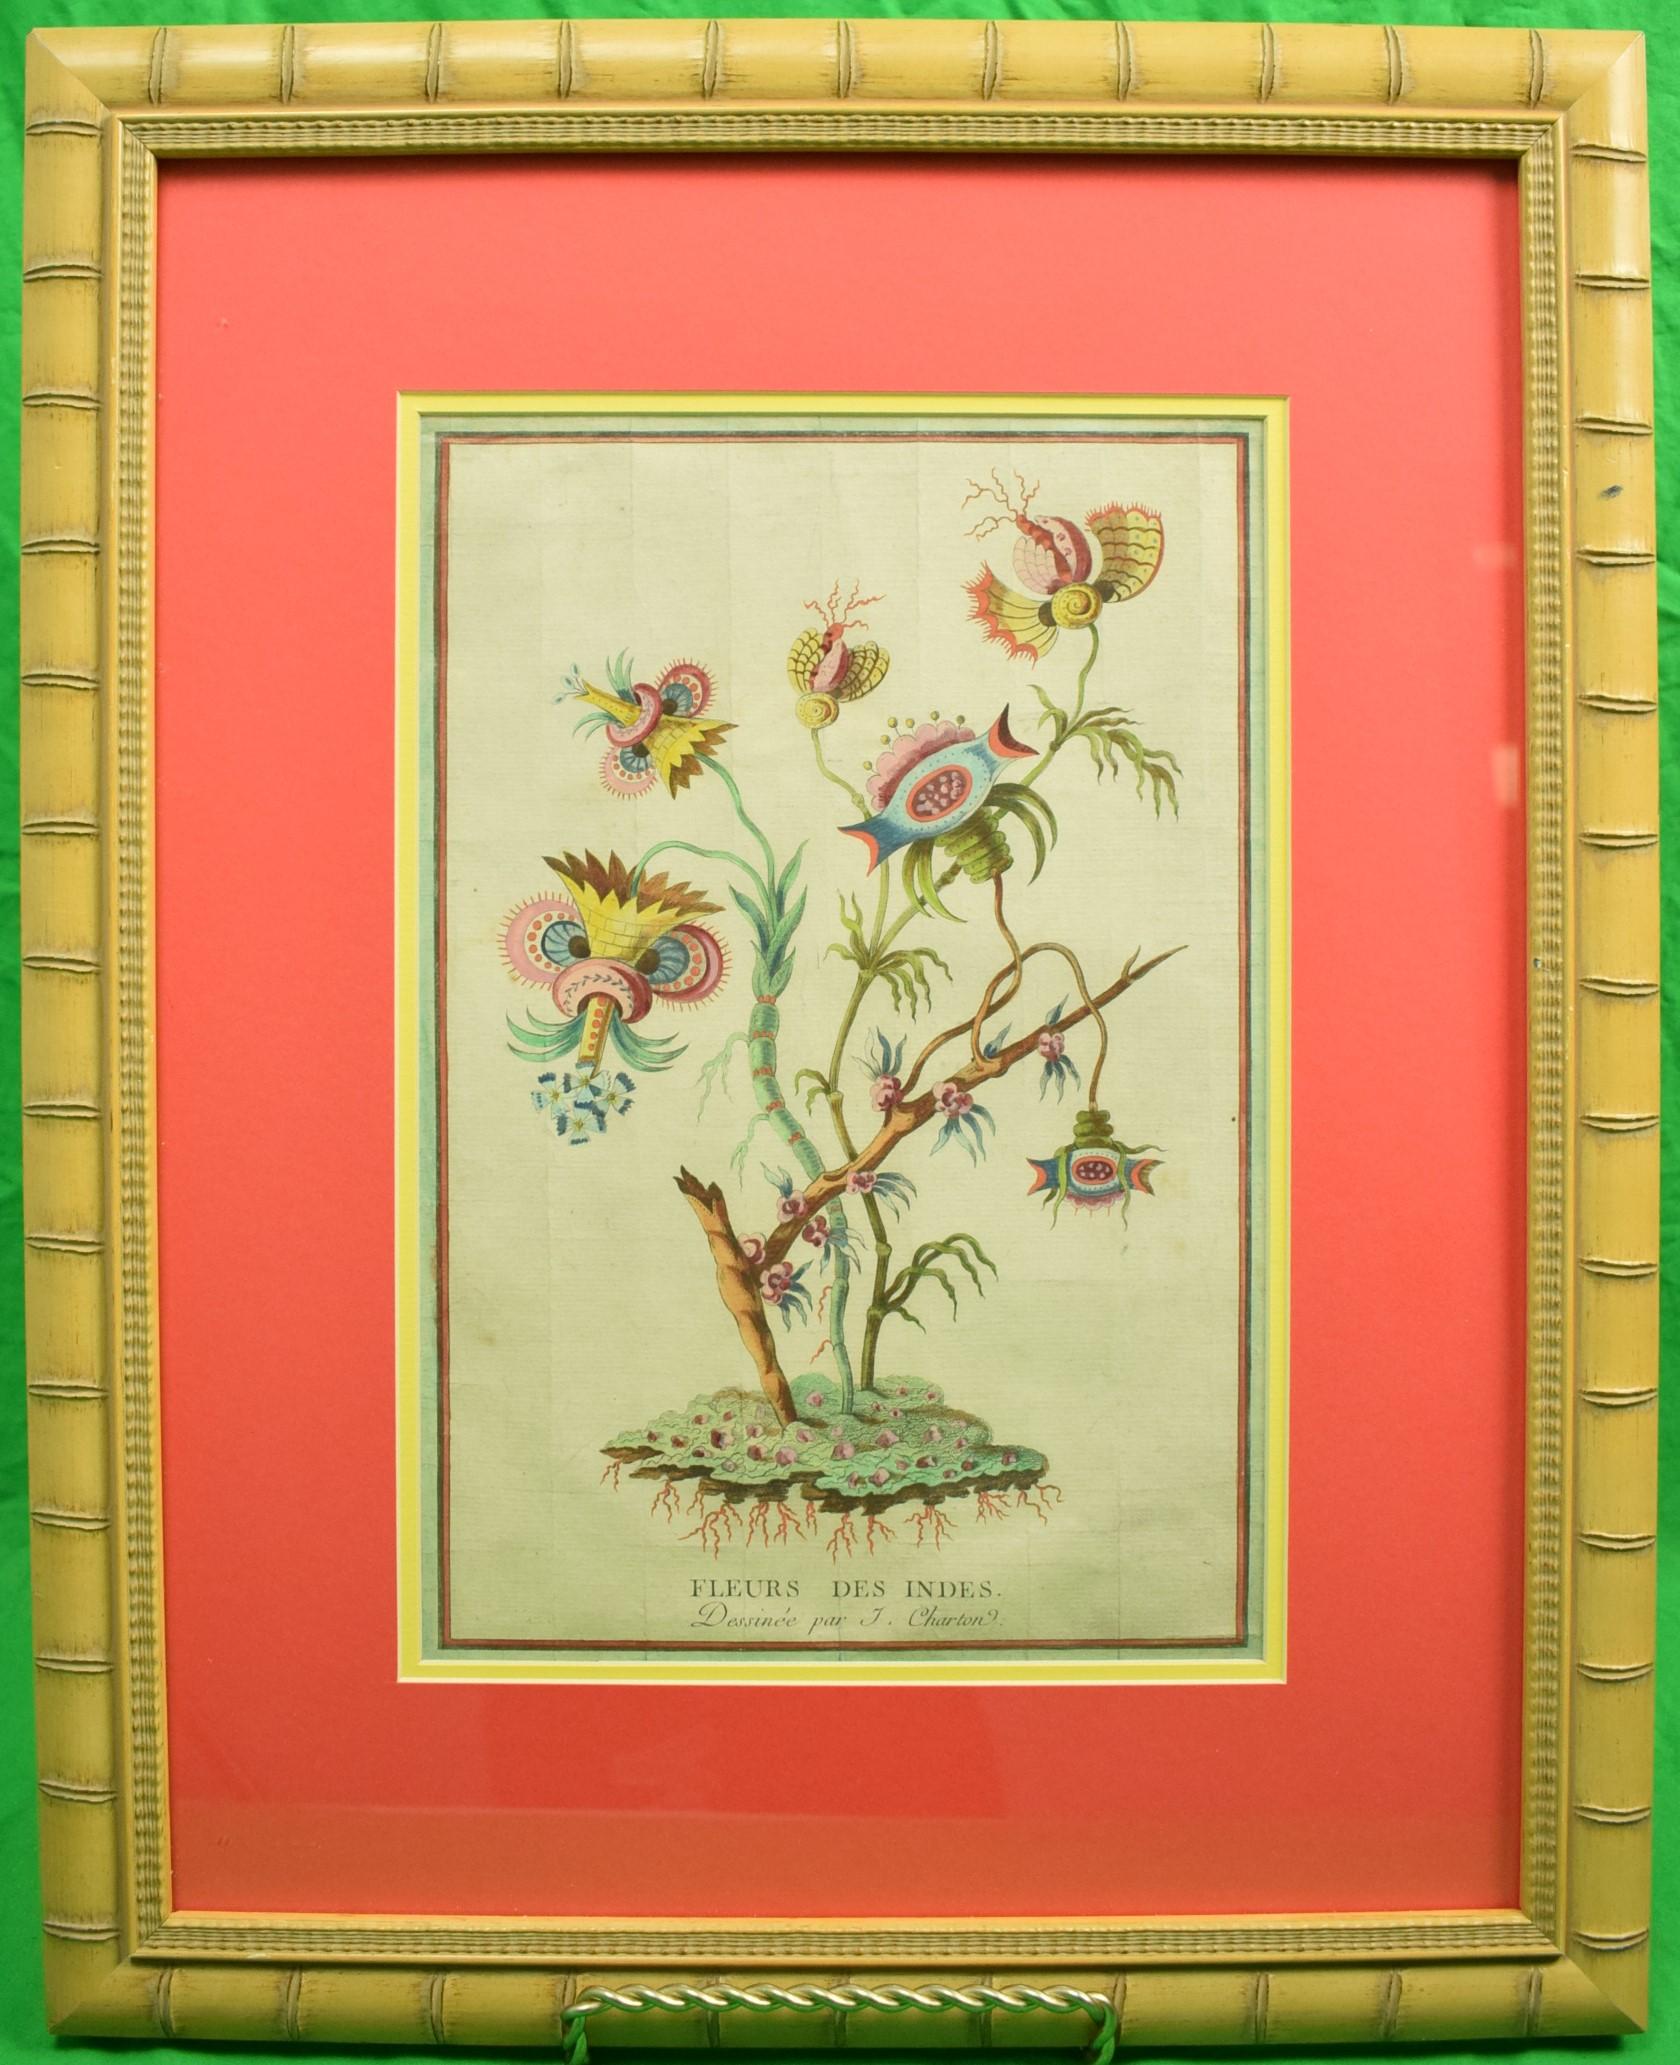 Fleurs des Indes - Painting by Jacques Charton